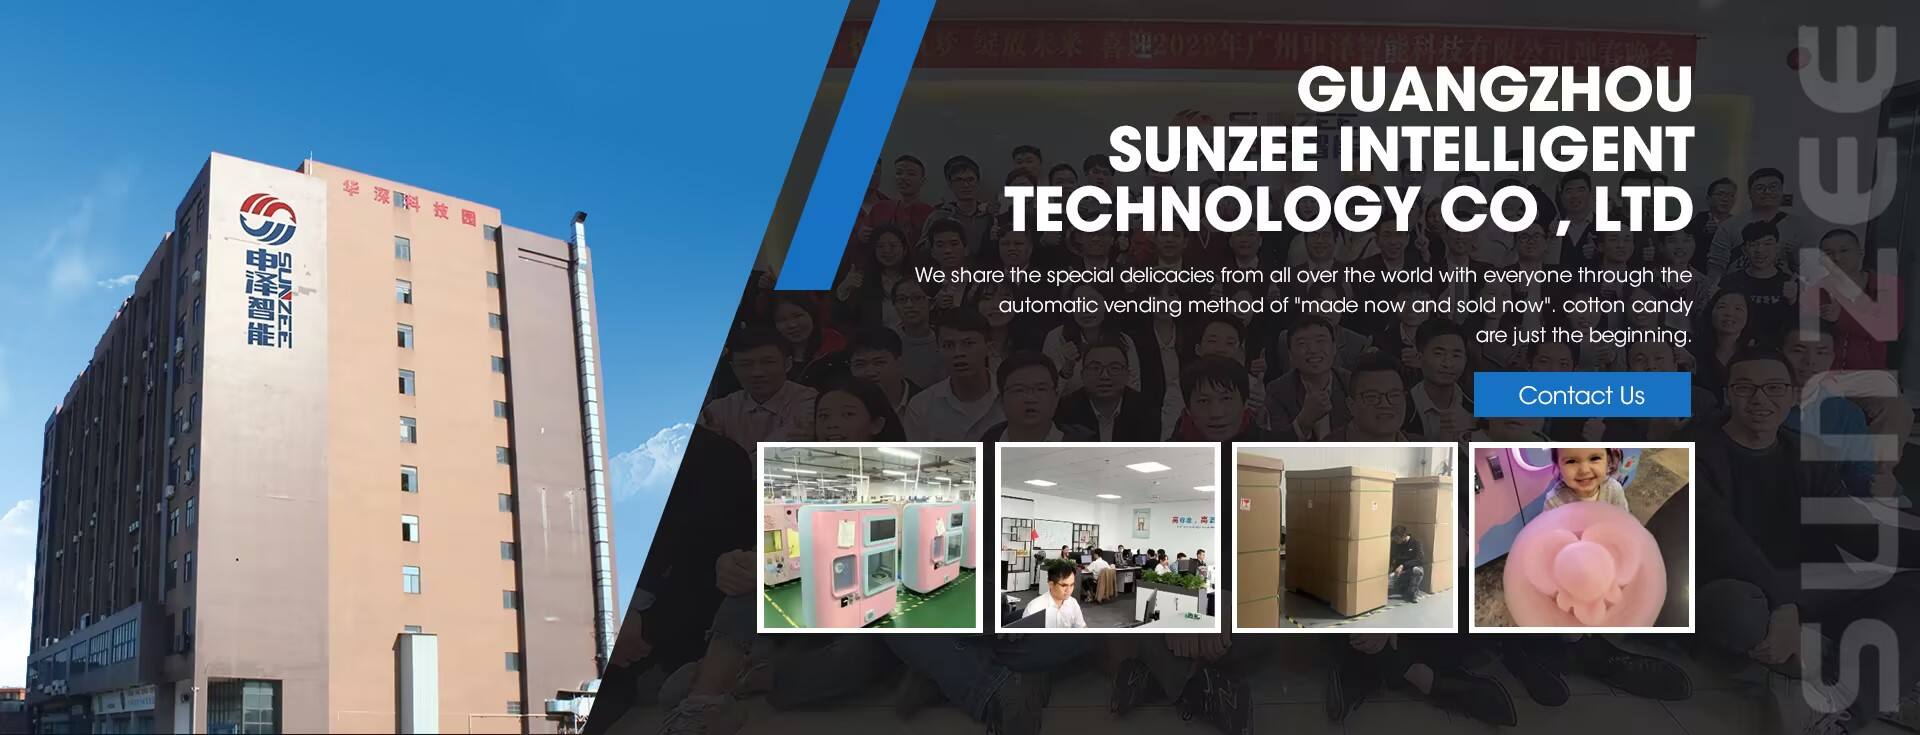 Guangzhou Sunzee Argutus Technology Co, Ltd.